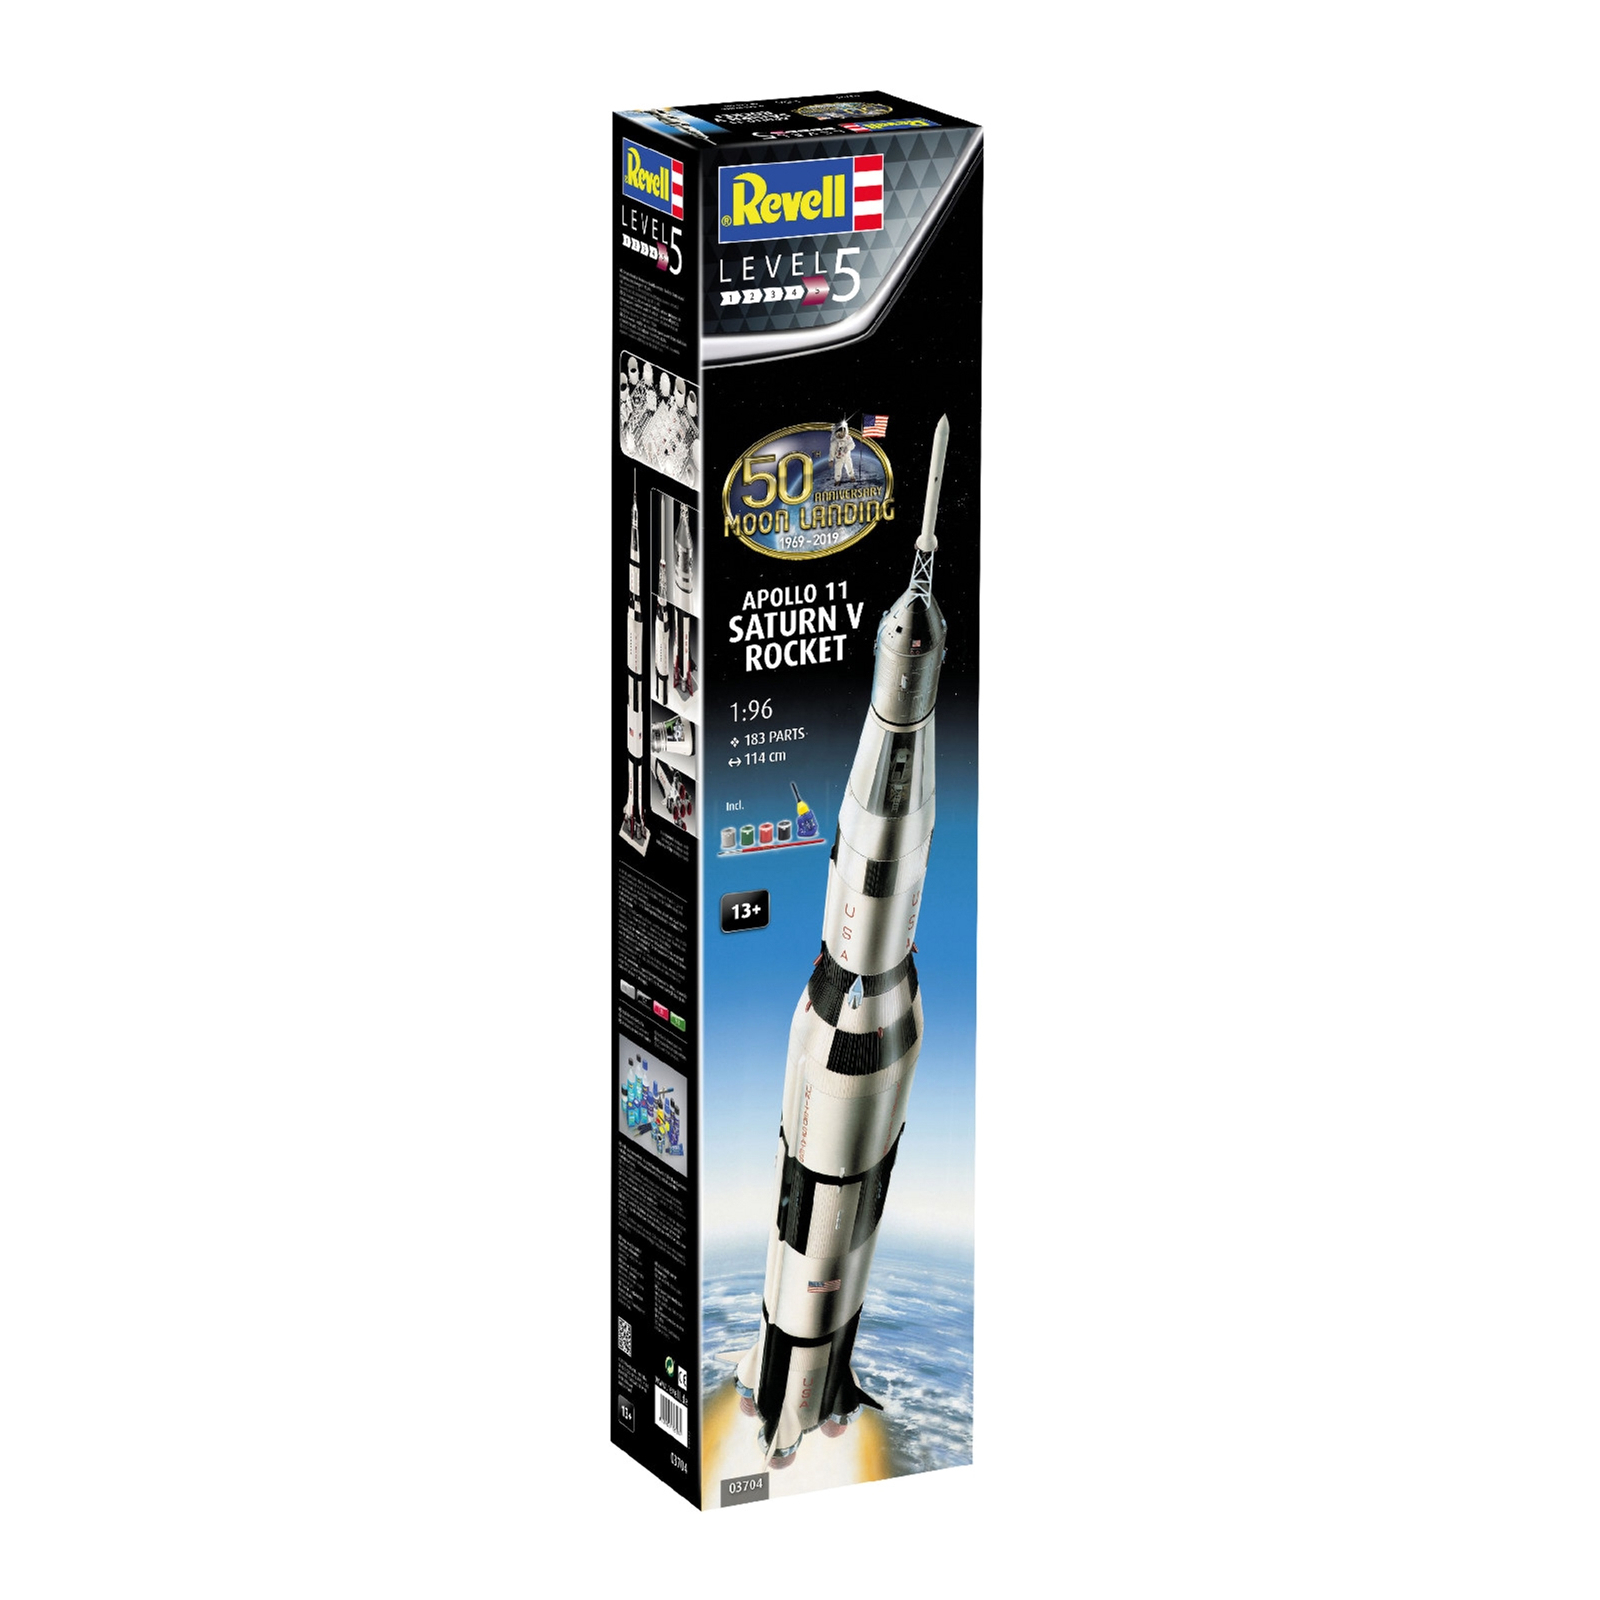 Сборная модель Revell Ракета-носитель СатурнV миссии Аполлон 11 уровень 5, 1:96 (RVL-03704)